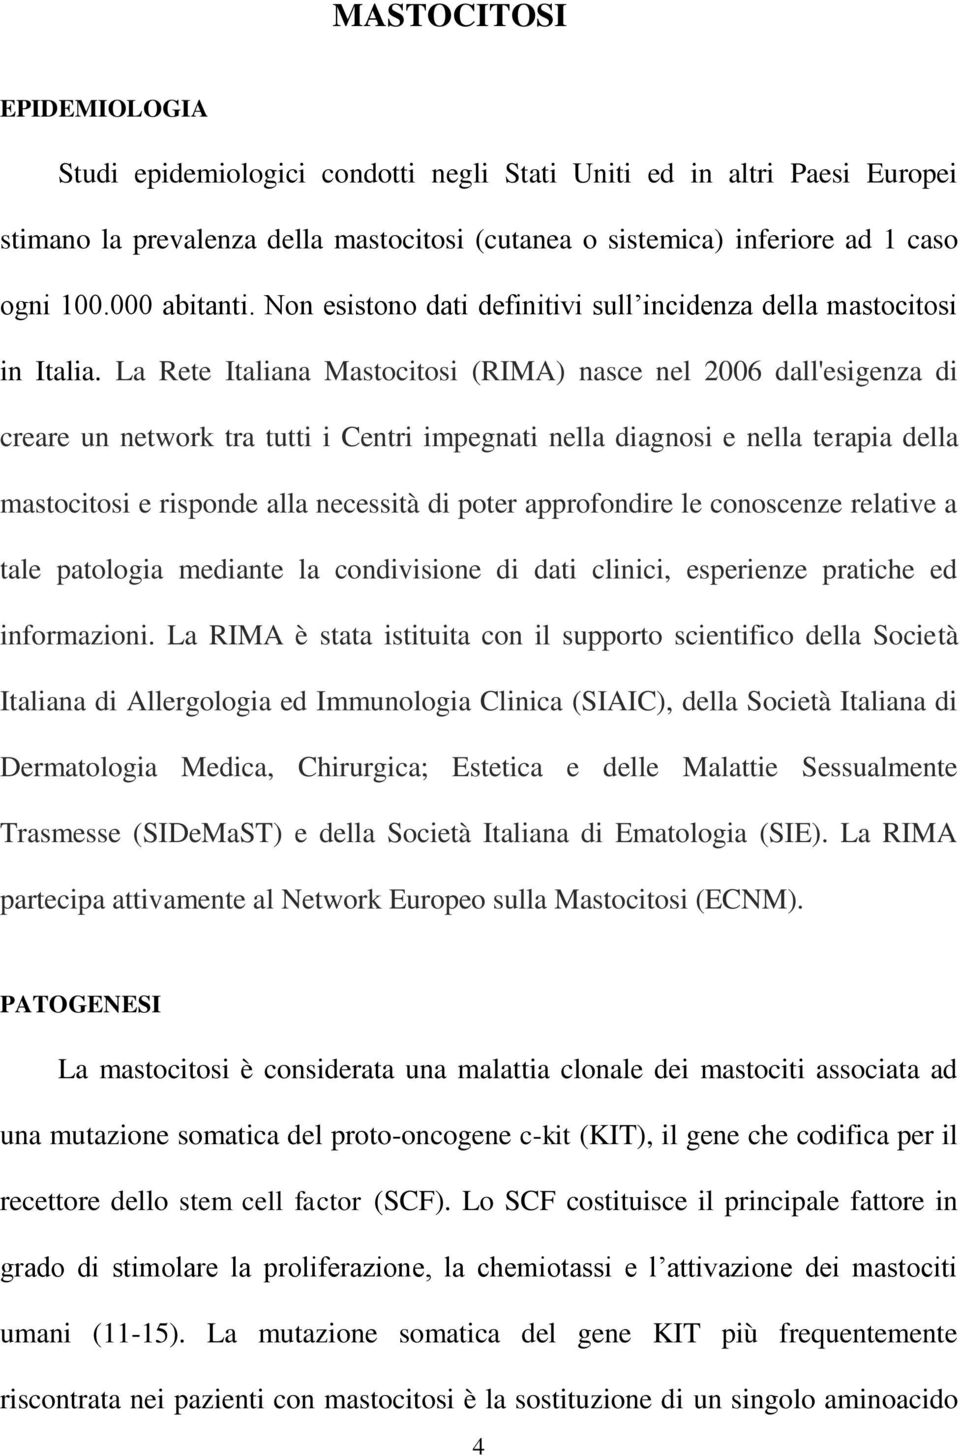 La Rete Italiana Mastocitosi (RIMA) nasce nel 2006 dall'esigenza di creare un network tra tutti i Centri impegnati nella diagnosi e nella terapia della mastocitosi e risponde alla necessità di poter